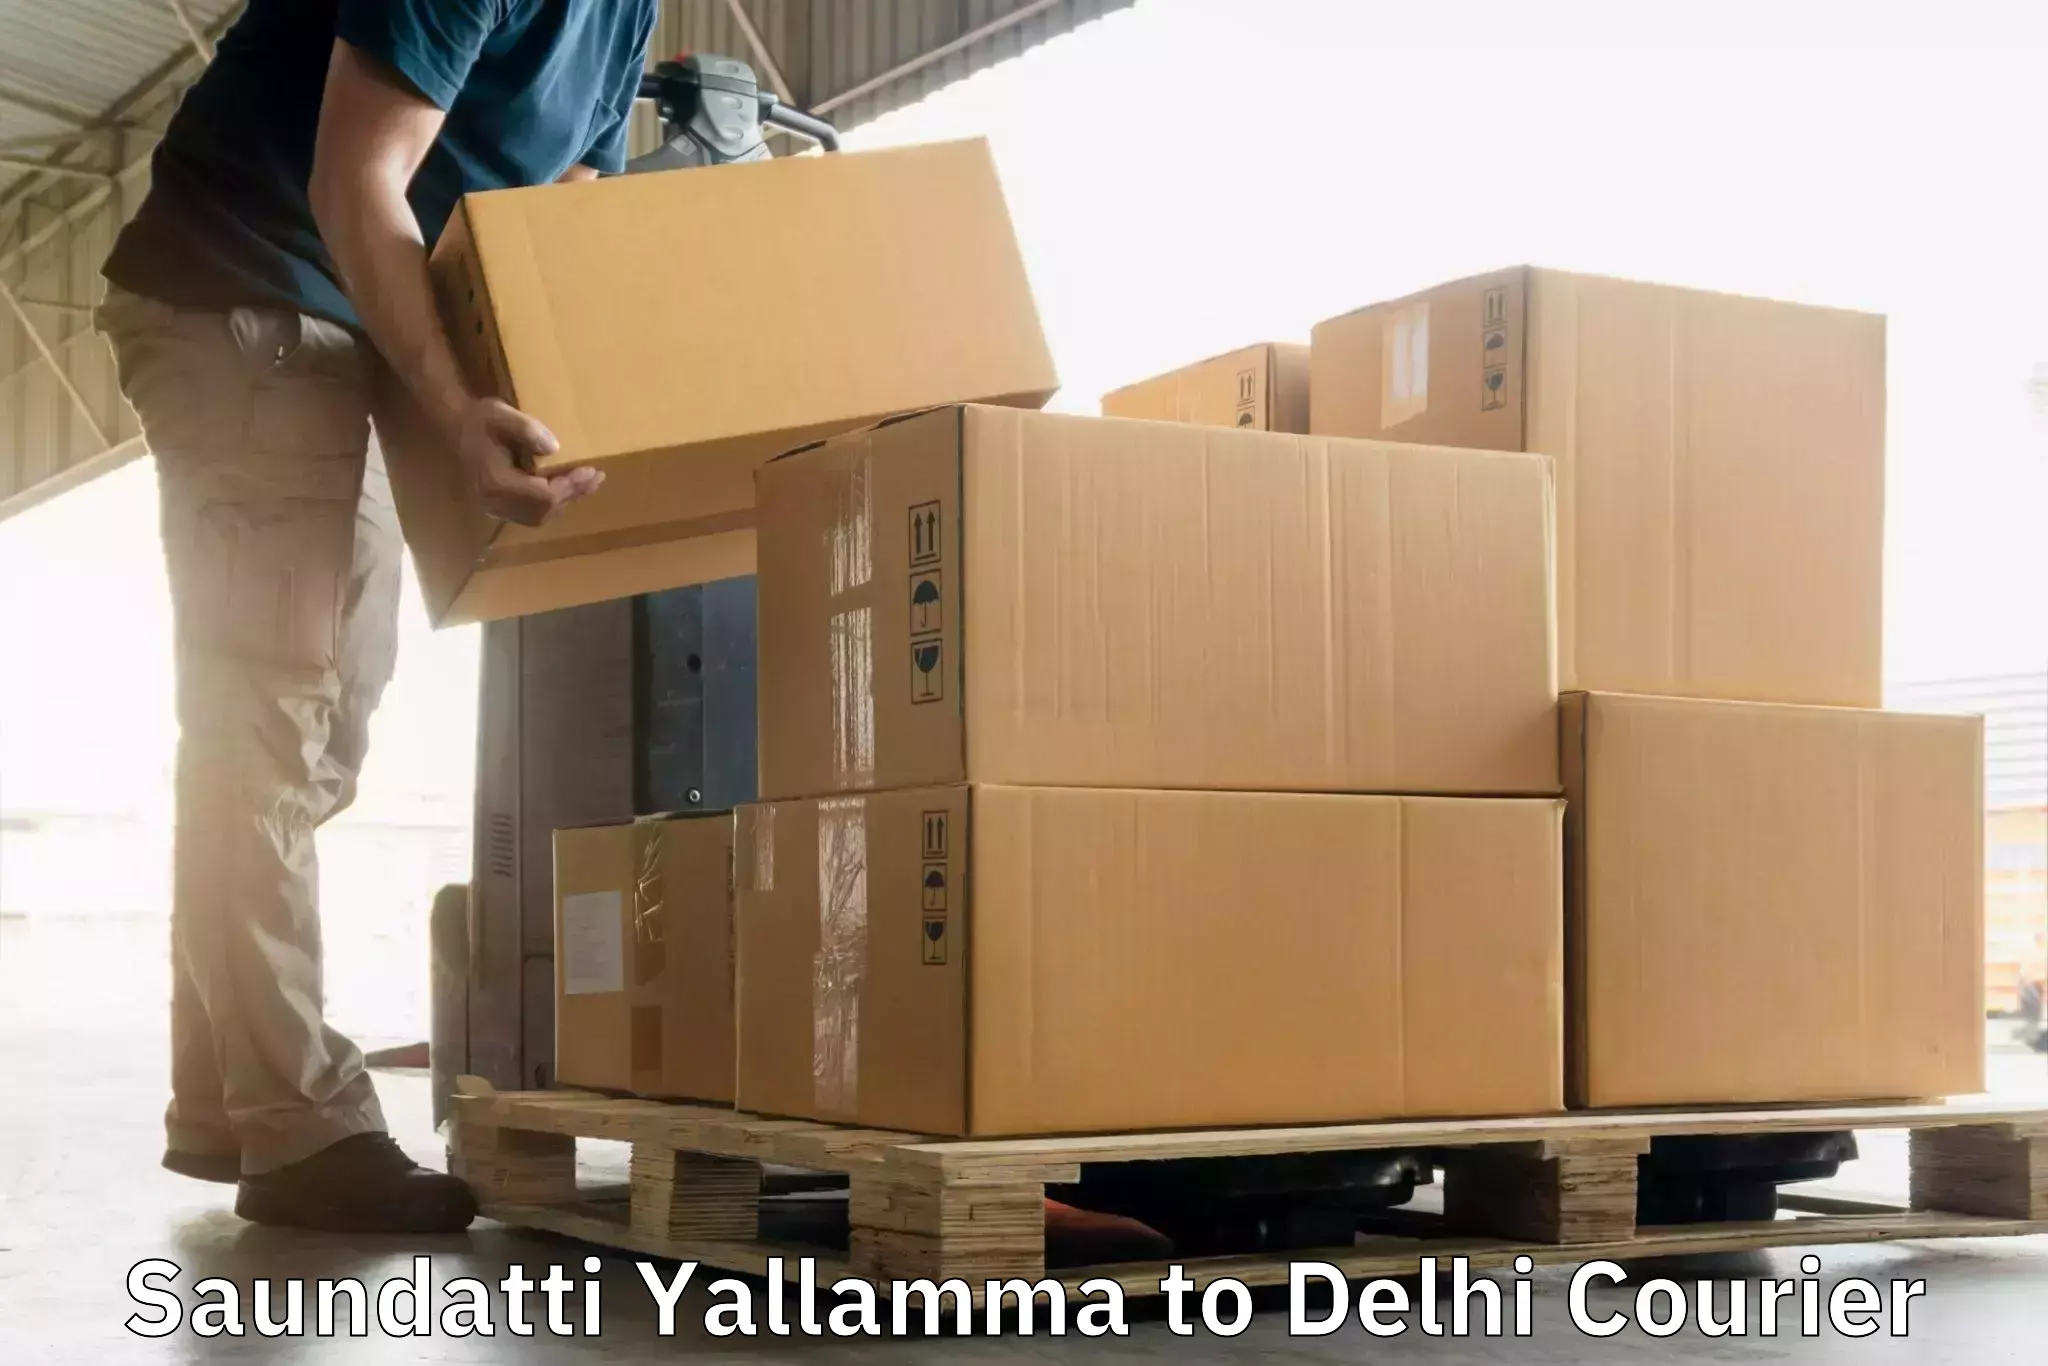 24/7 courier service Saundatti Yallamma to Jamia Hamdard New Delhi